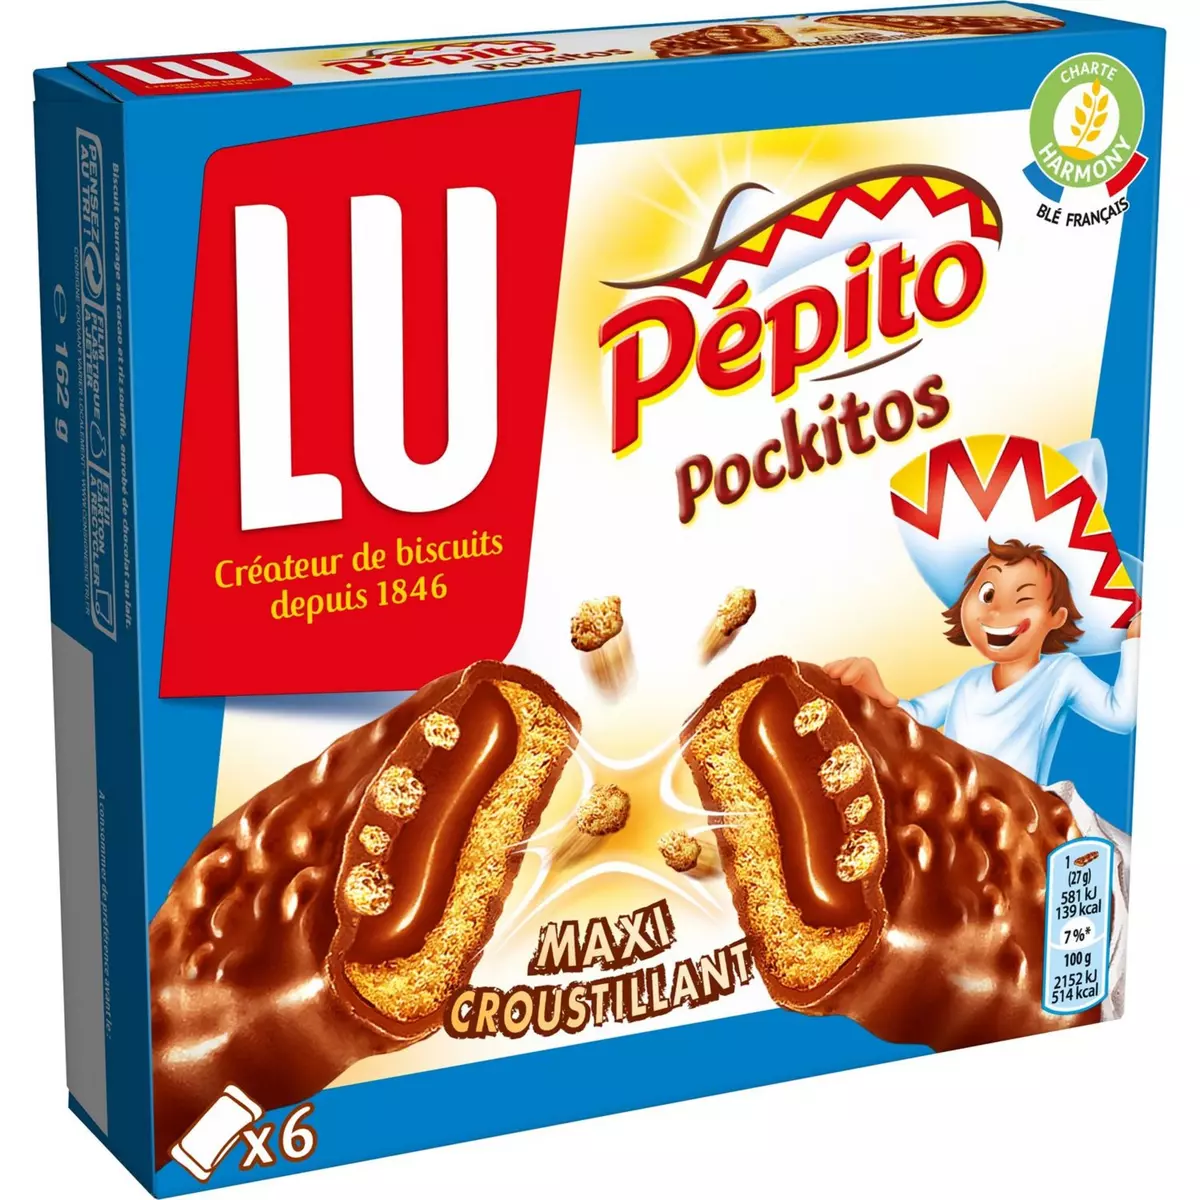 PEPITO Pockitos biscuits barres croustillantes au chocolat au lait et riz soufflé, sachets individuels 6 biscuits 162g